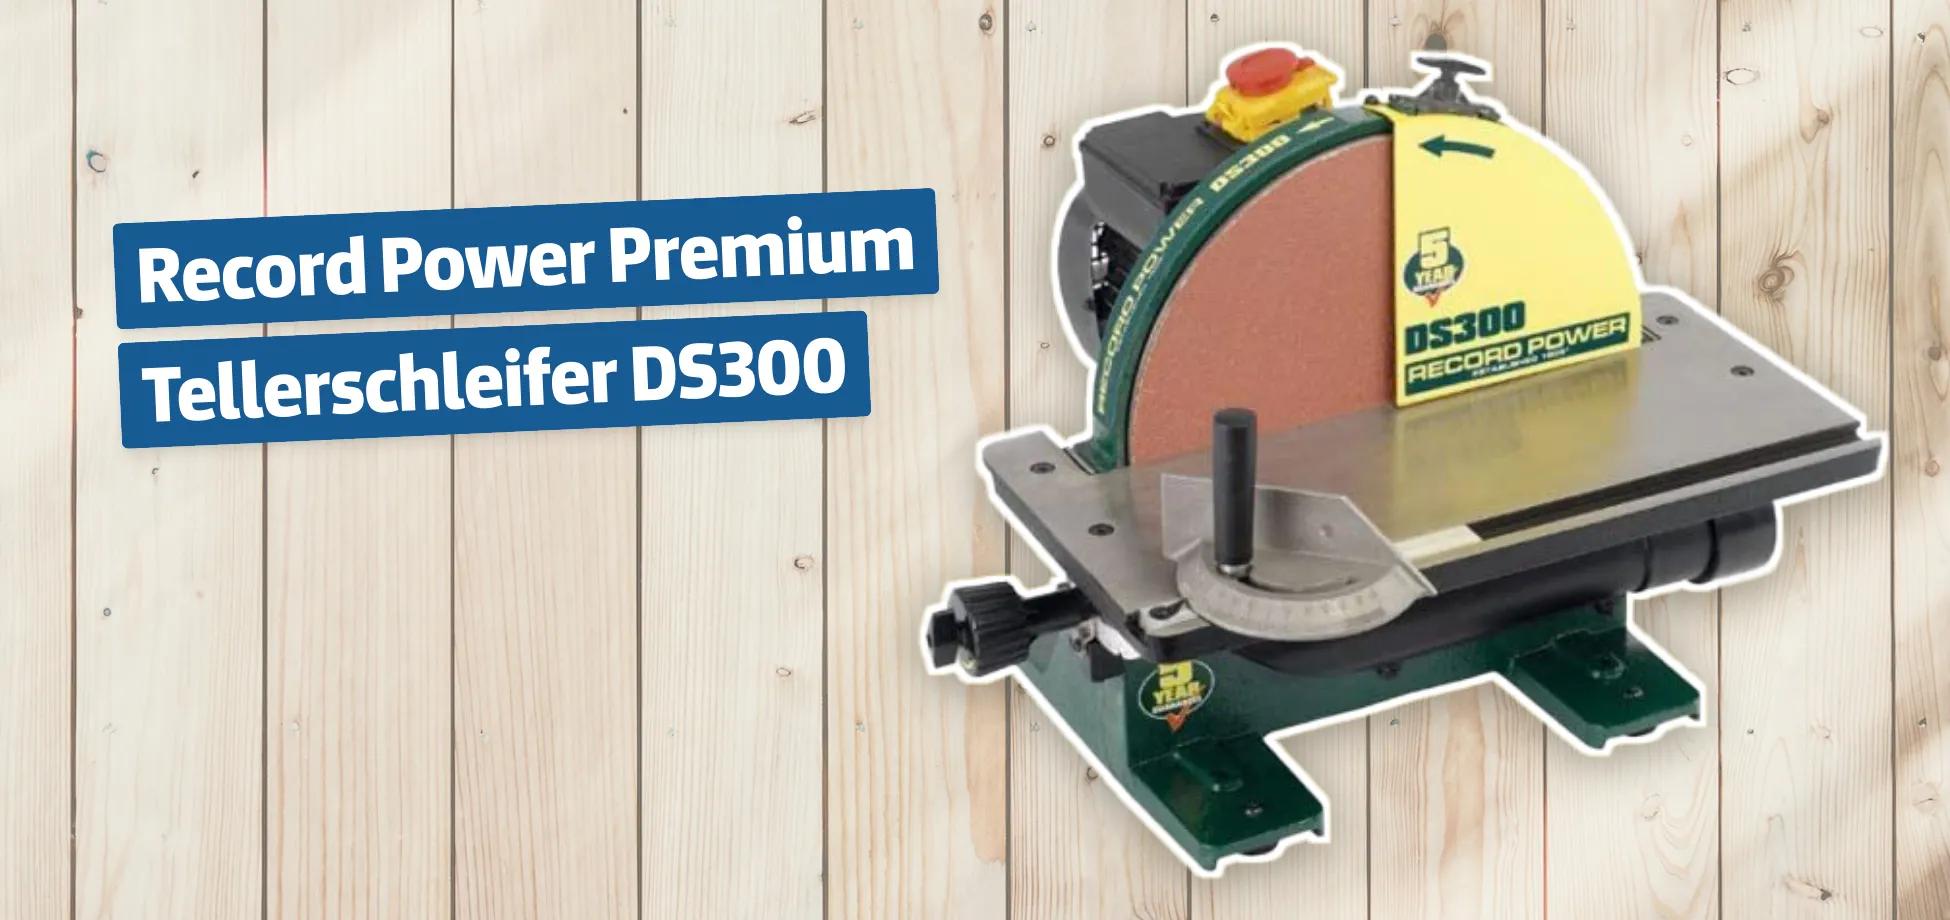 Record Power Premium Tellerschleifer DS300